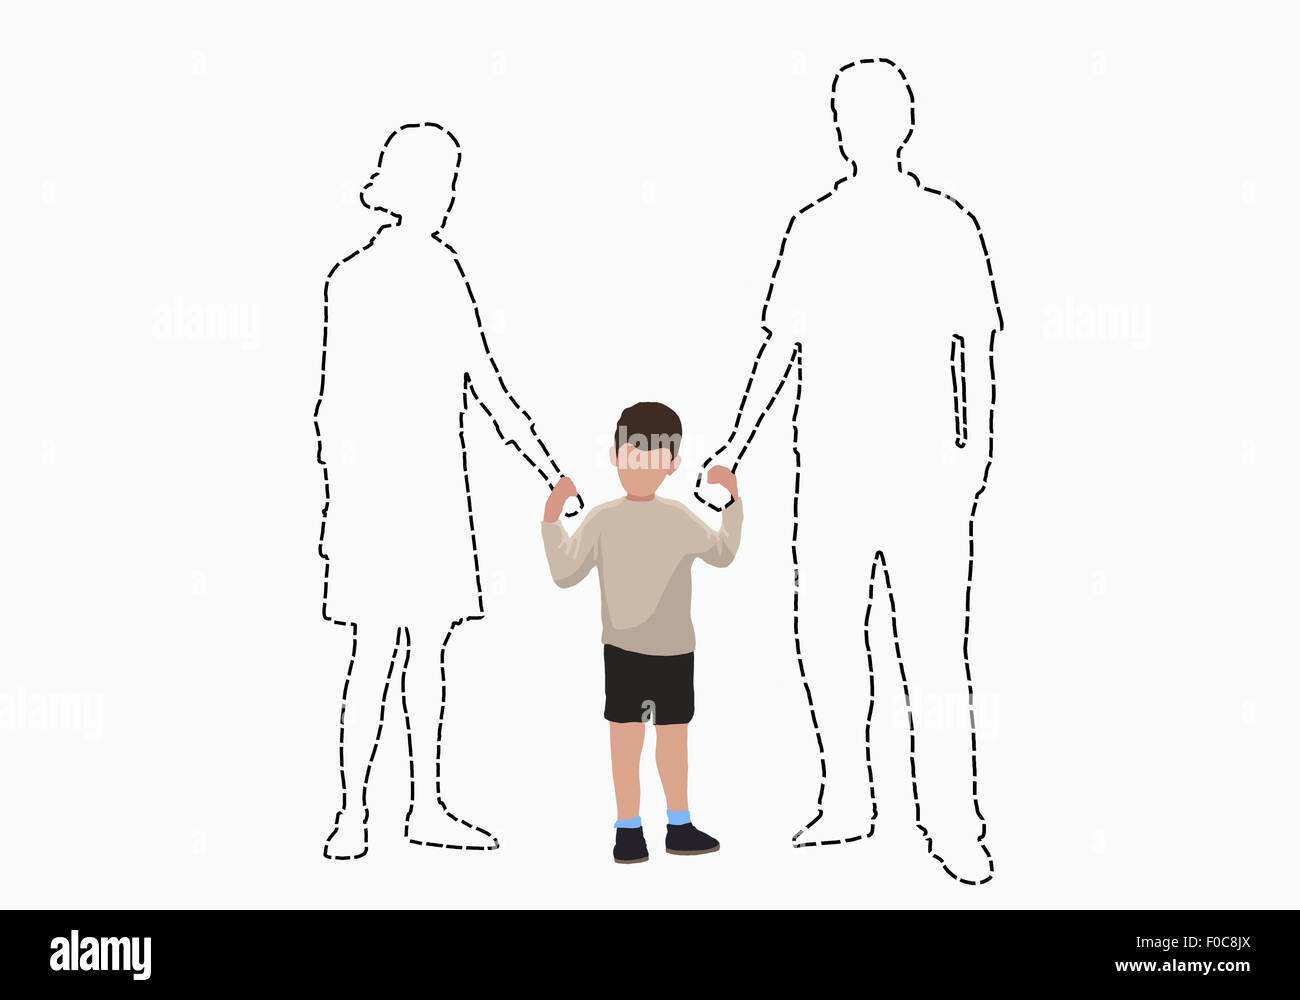 Image d'illustration de boy holding hands de parents disparus sur fond blanc Banque D'Images